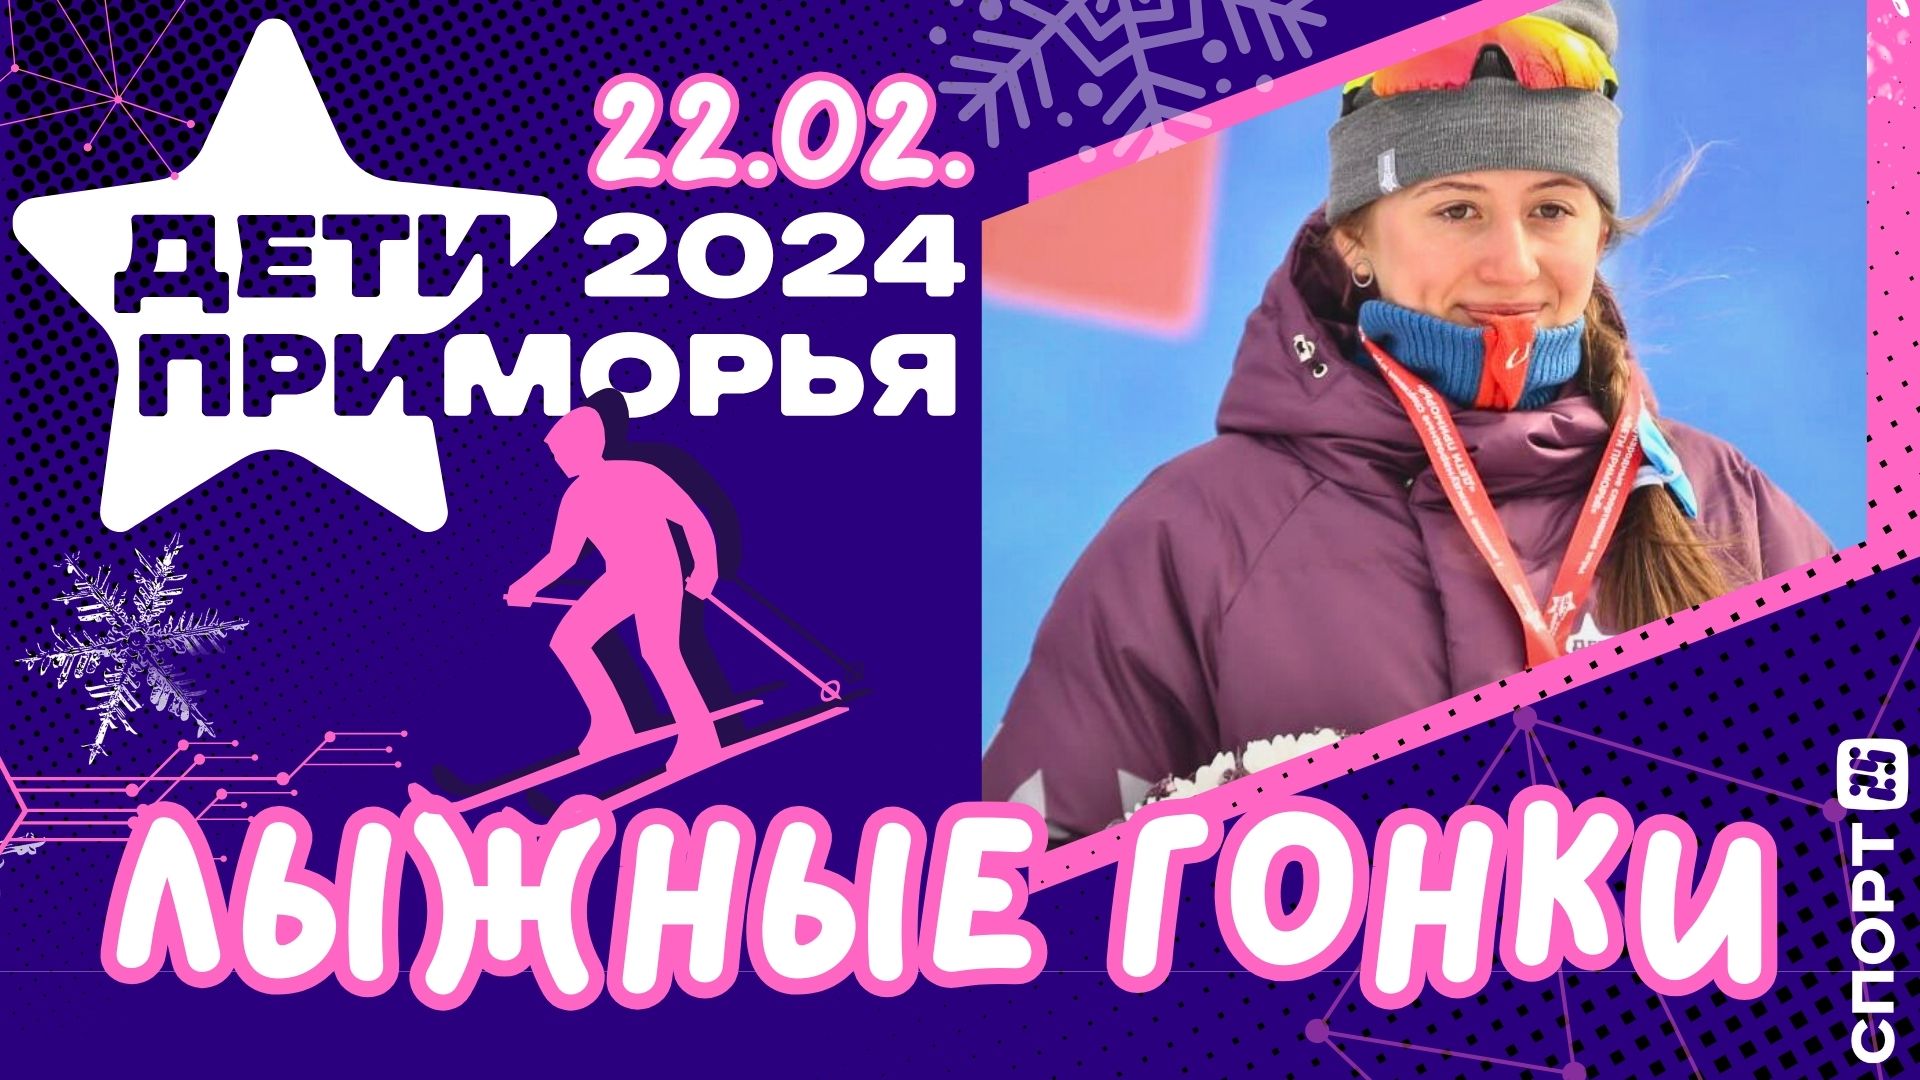 Дети Приморья 2024: Екатерина Новикова из Спасска-Дальнего взяла вторую медаль Игр | #лыжныегонки